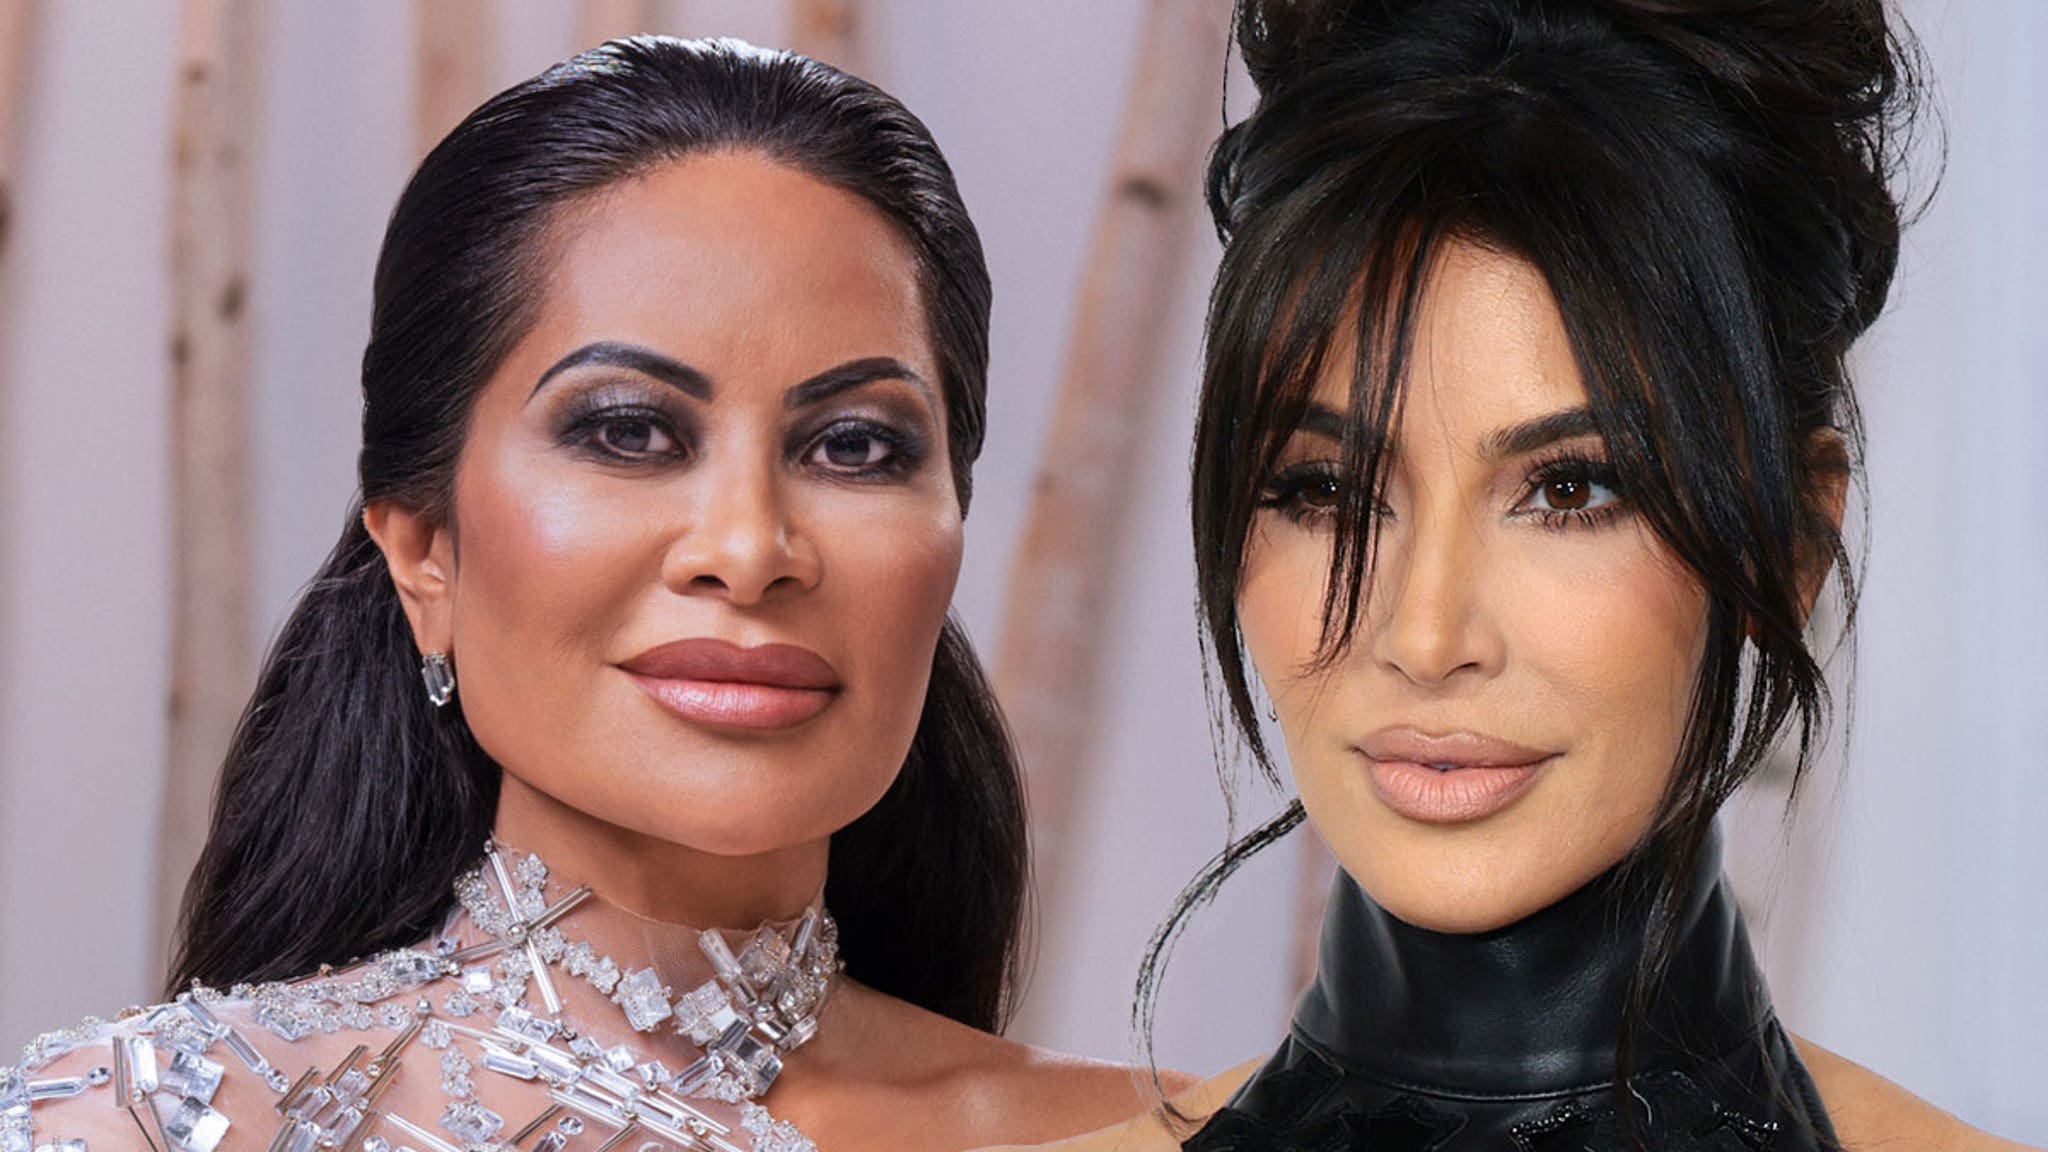 Bintang ‘RHOSLC’ Jen Shah ingin Kim Kardashian memerankannya dalam film biografi potensial